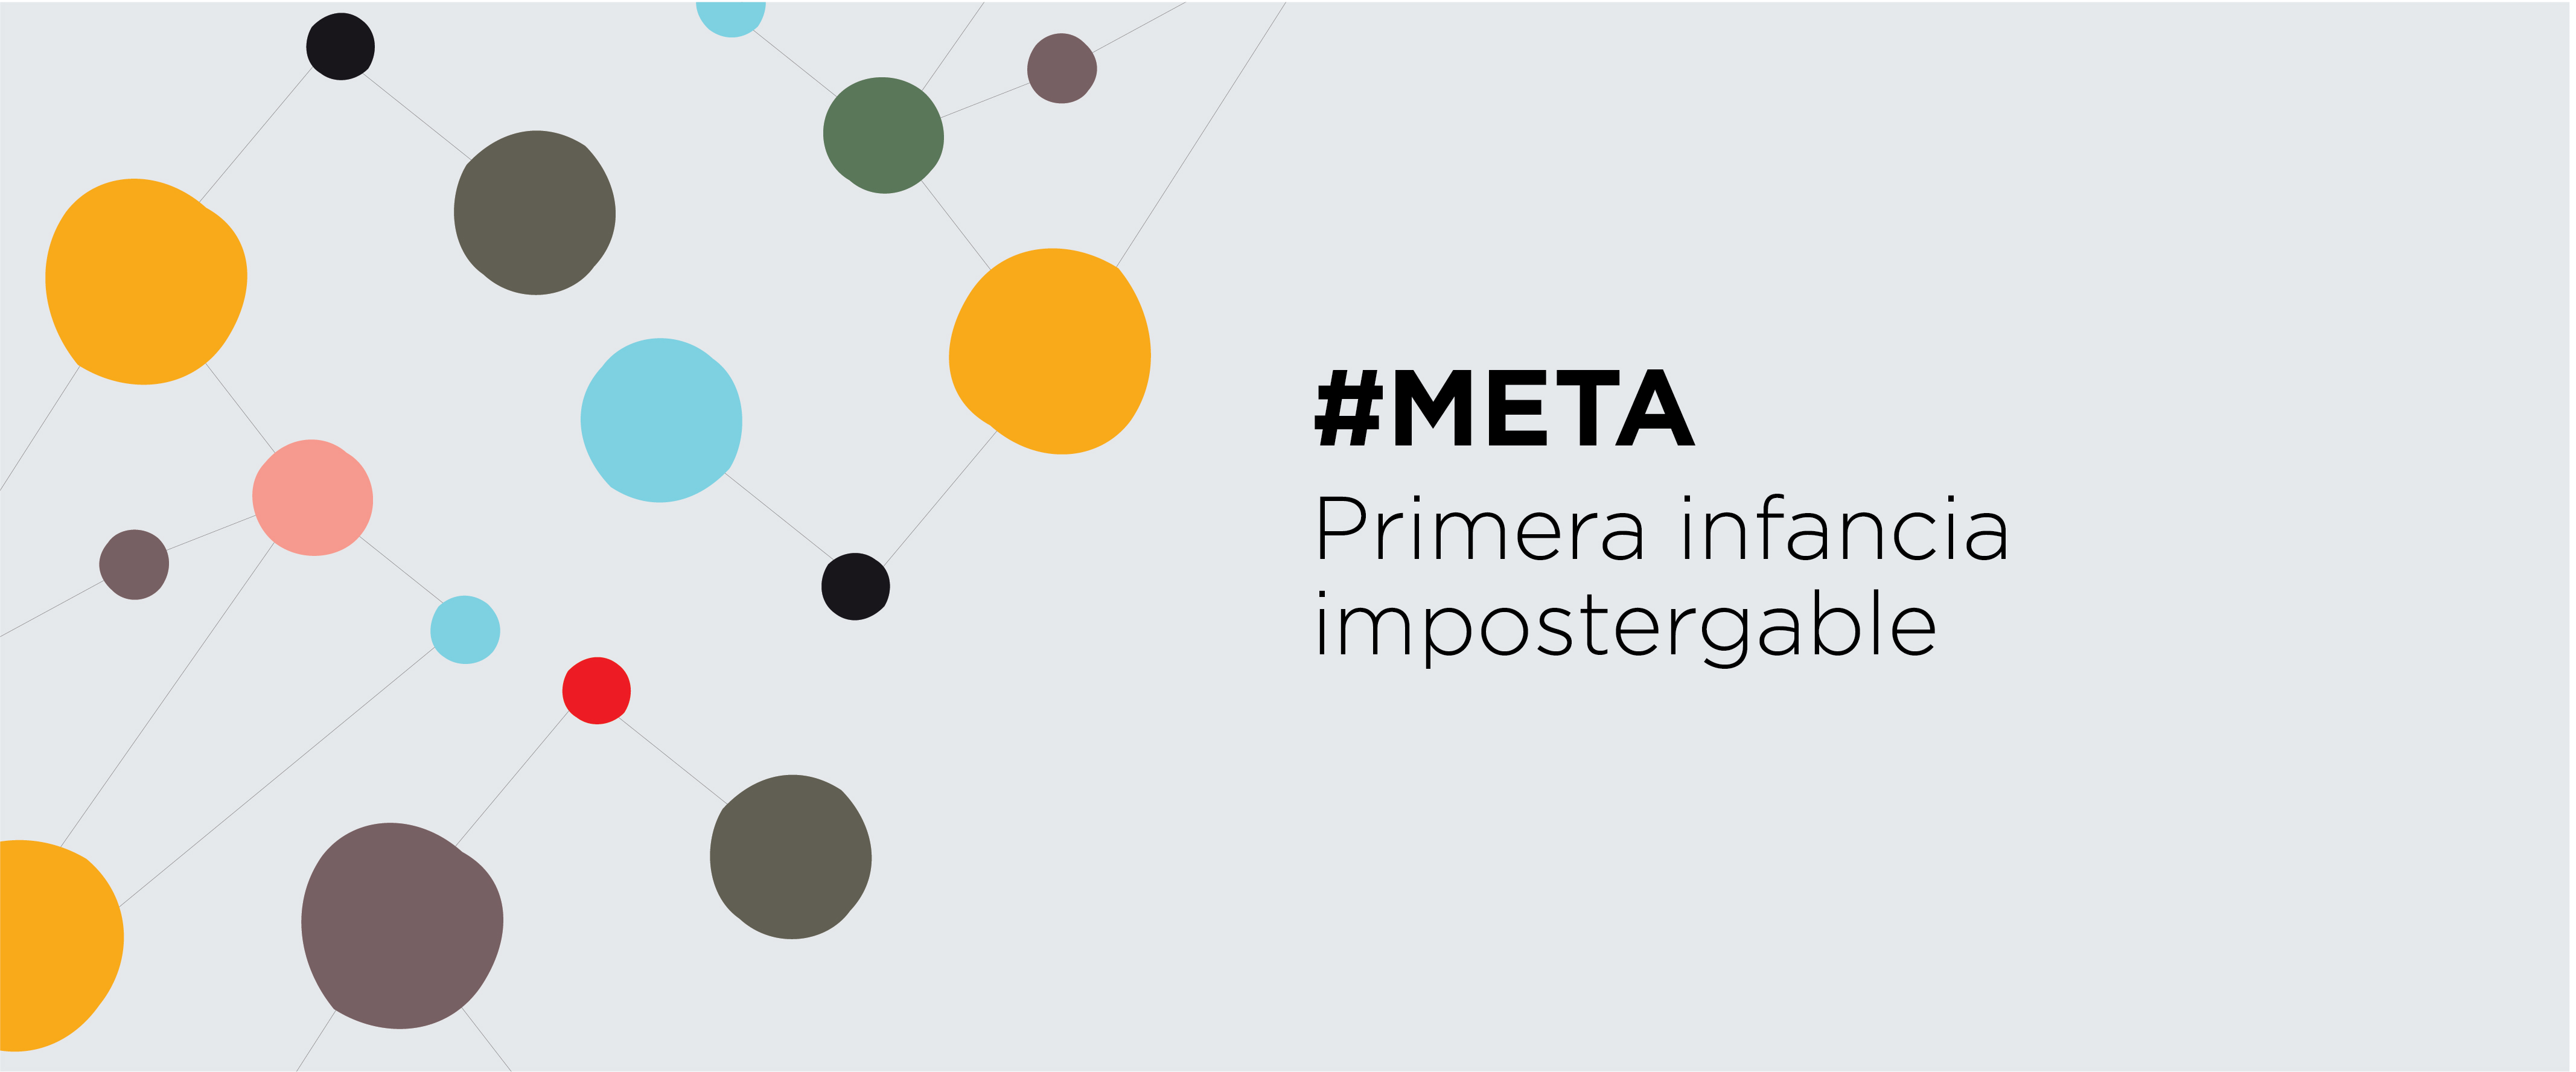 Flyer "Meta: primera infancia impostergable" de CIPPEC